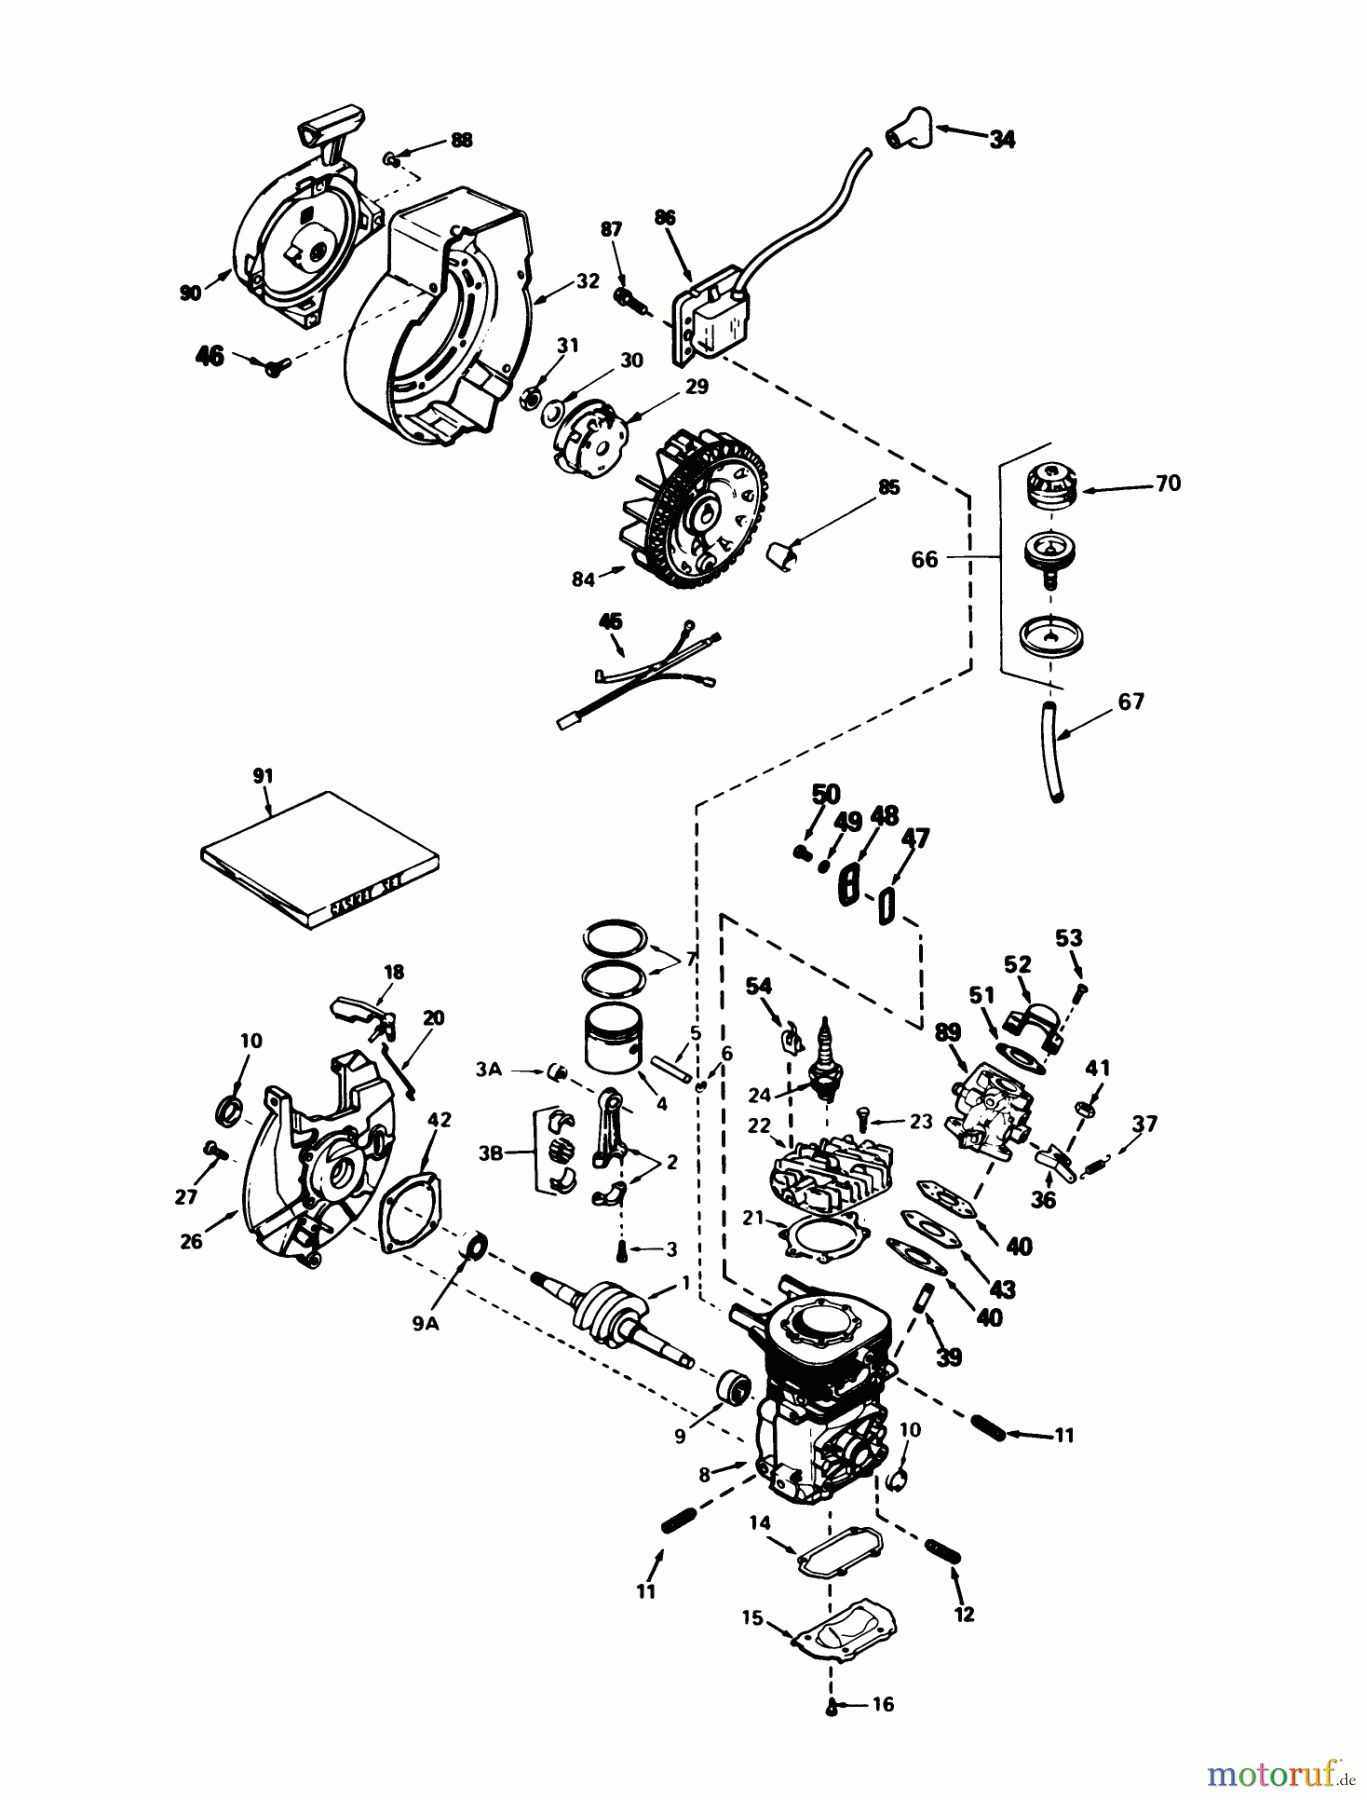  Toro Neu Snow Blowers/Snow Throwers Seite 1 38162 (S-620) - Toro S-620 Snowthrower, 1986 (6000001-6999999) ENGINE TECUMSEH MODEL AH-600 TYPE 1623-A